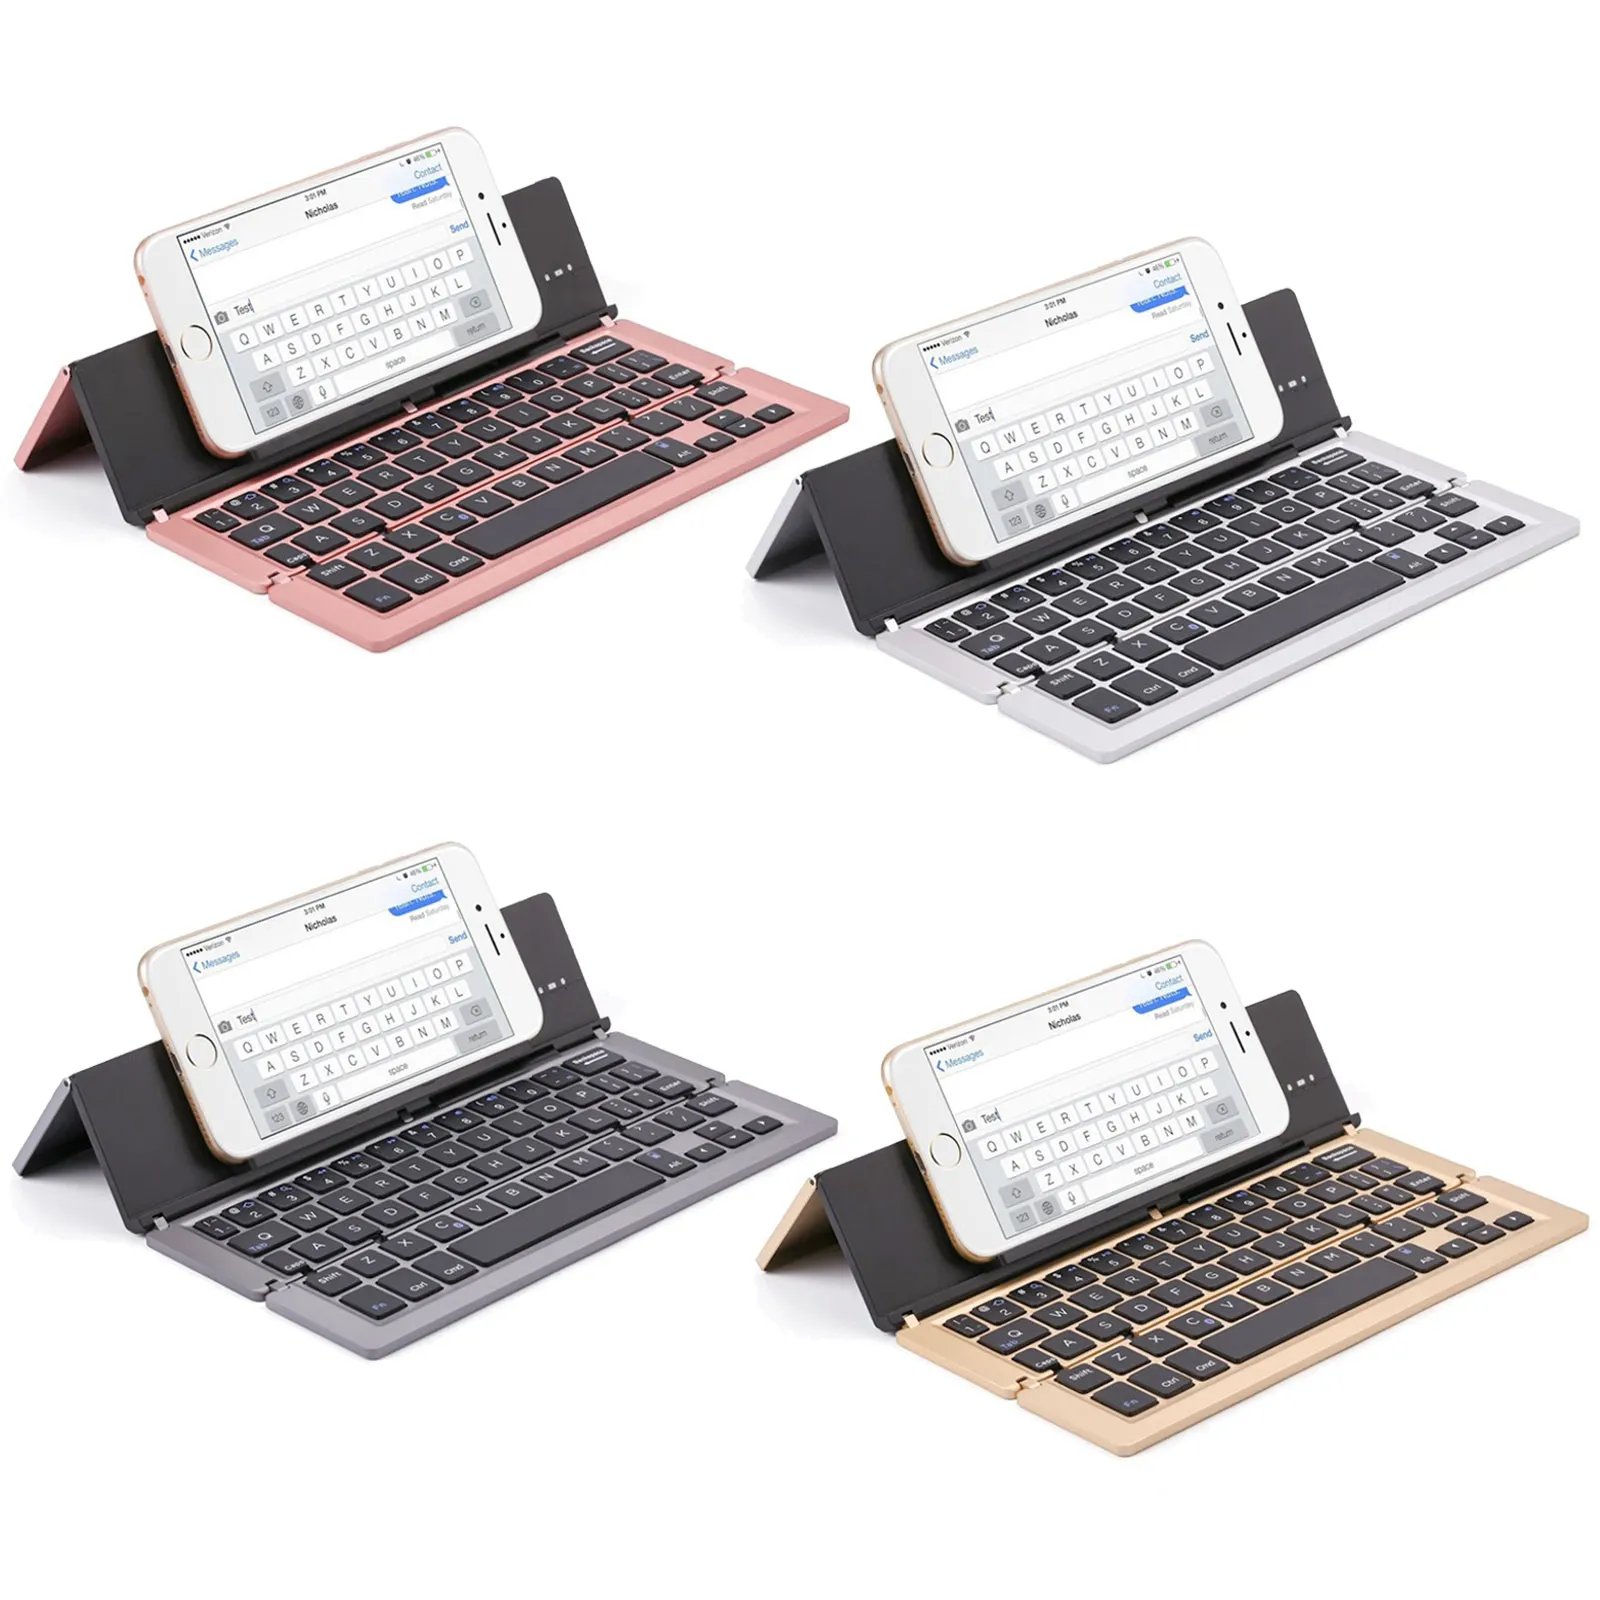 

Vococal Портативная Складная Алюминиевая 58-клавишная Bluetooth беспроводная клавиатура с подставкой для IOS Android смартфонов планшетов